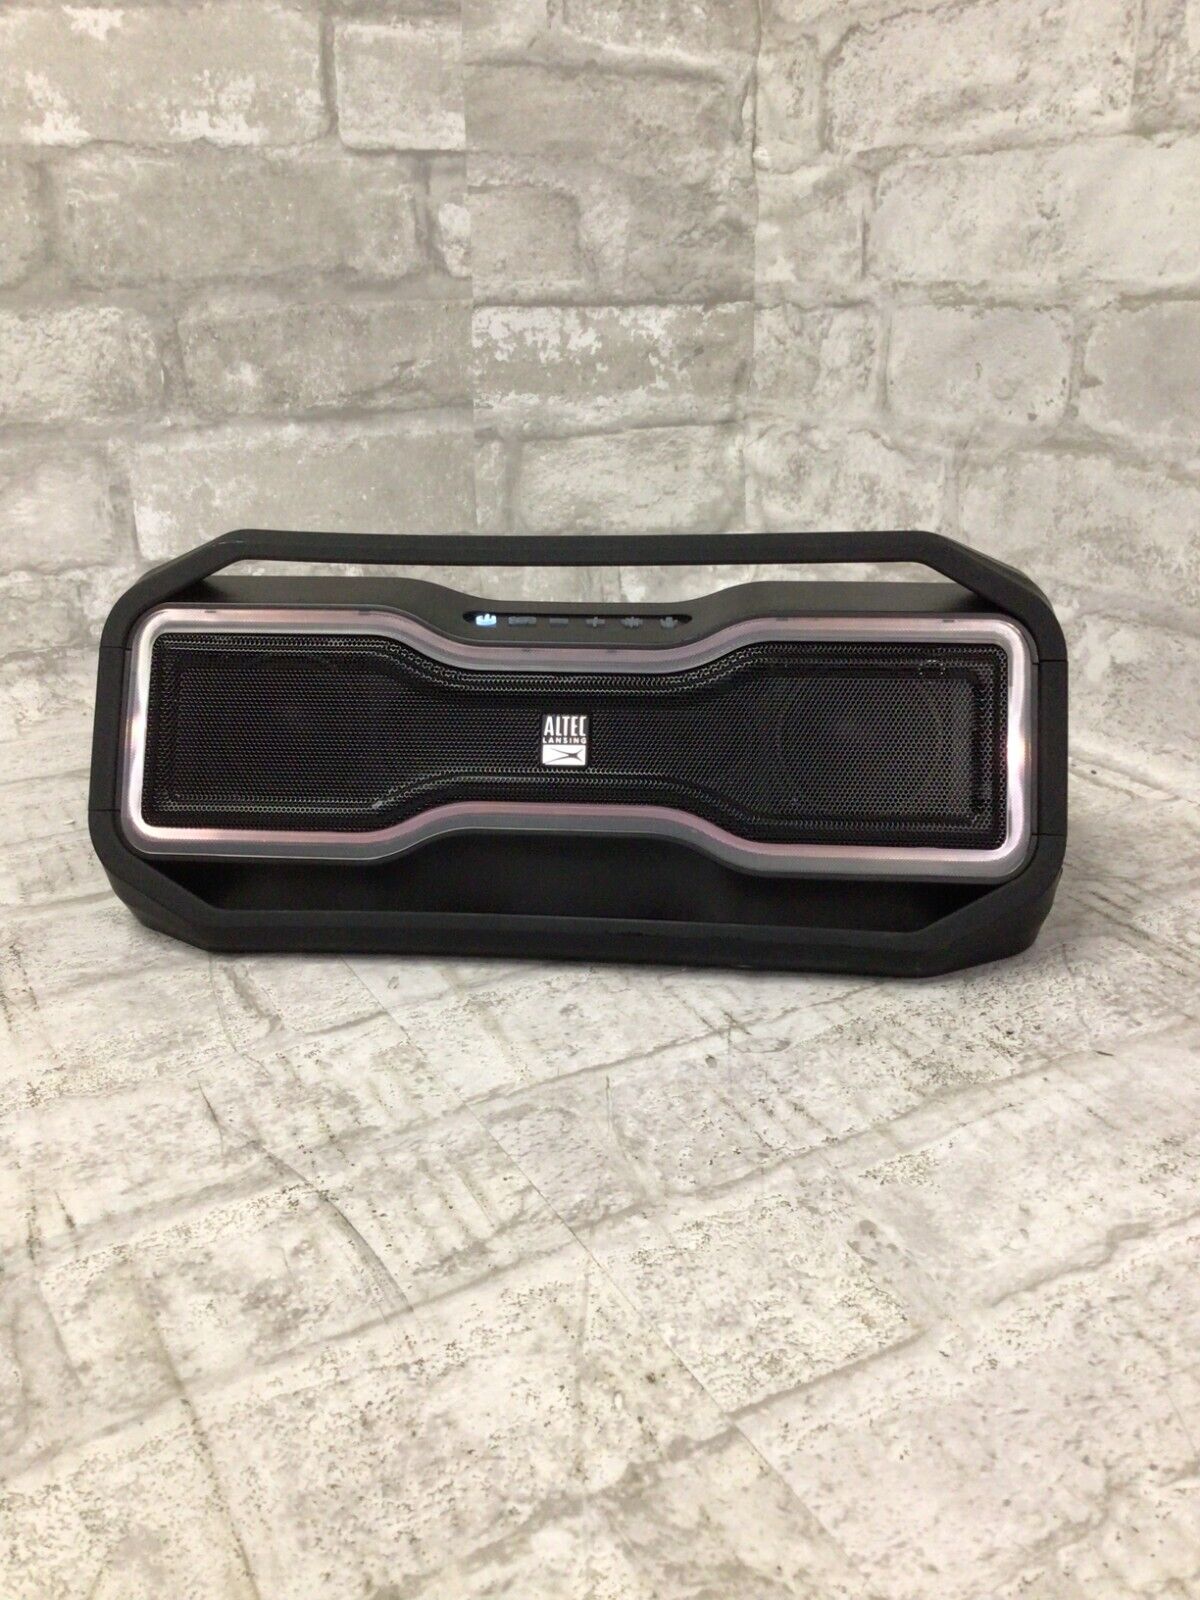 Altec Lansing Rockbox Waterproof Wireless Portable Speaker - Black